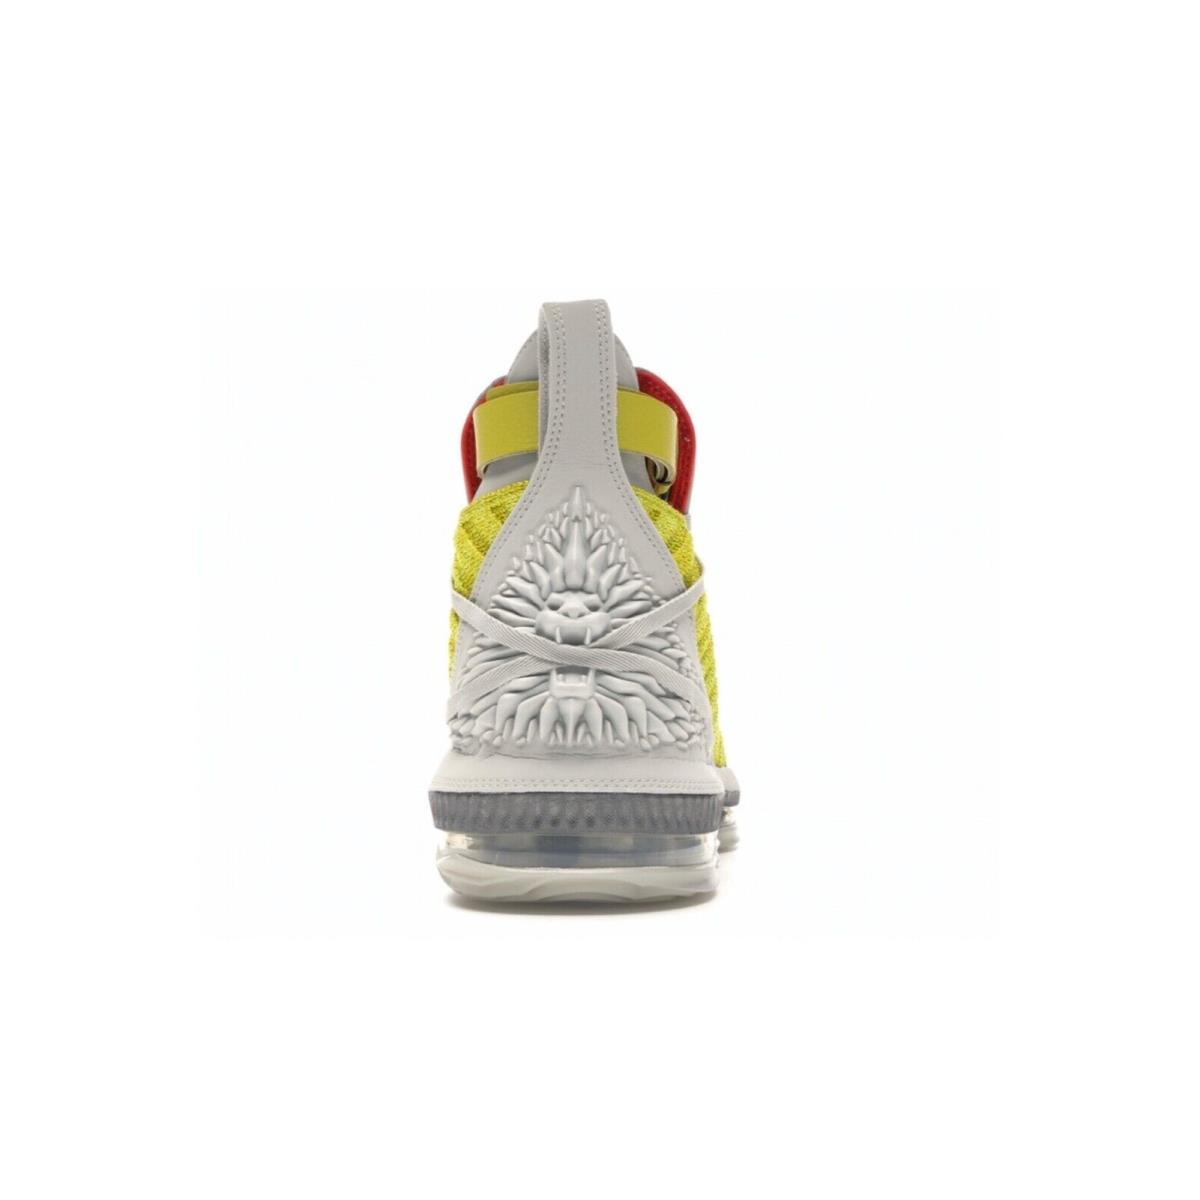 Nike shoes LeBron - Bright Citron/Light Bone 2